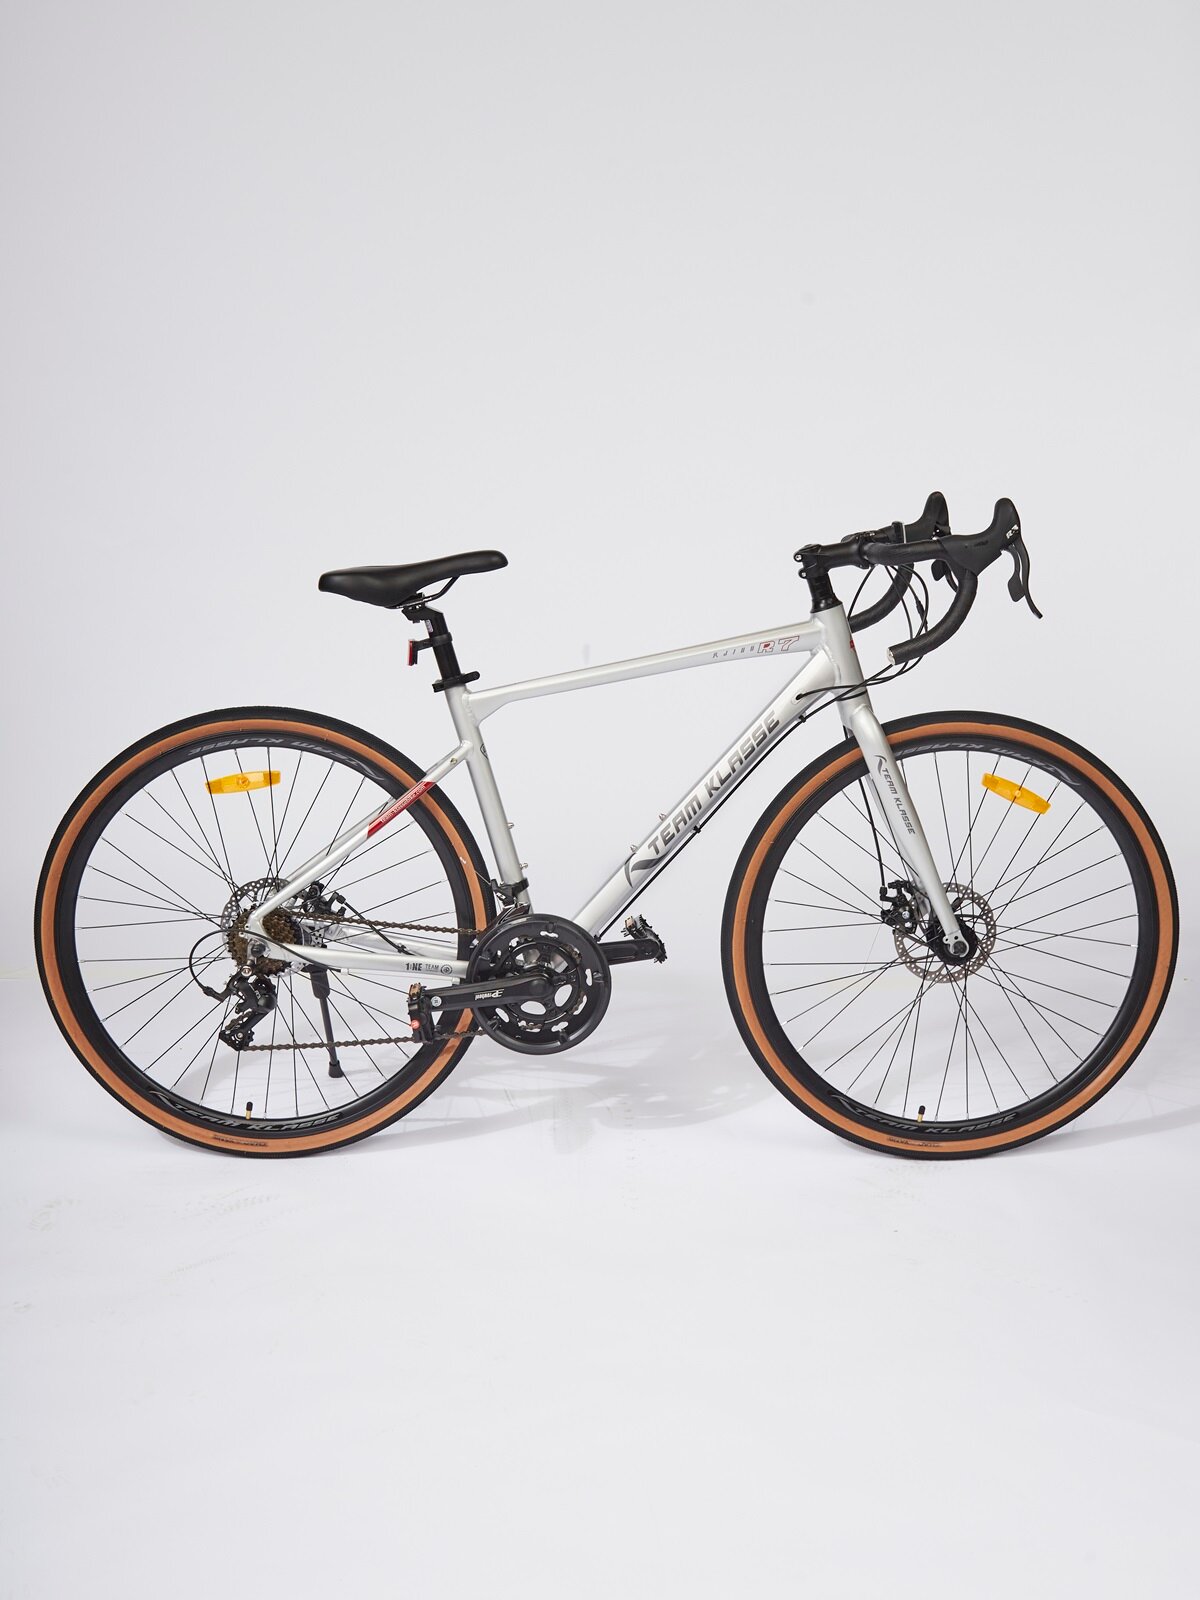 Шоссейный взрослый велосипед Team Klasse черный диаметр колес 28 дюймов